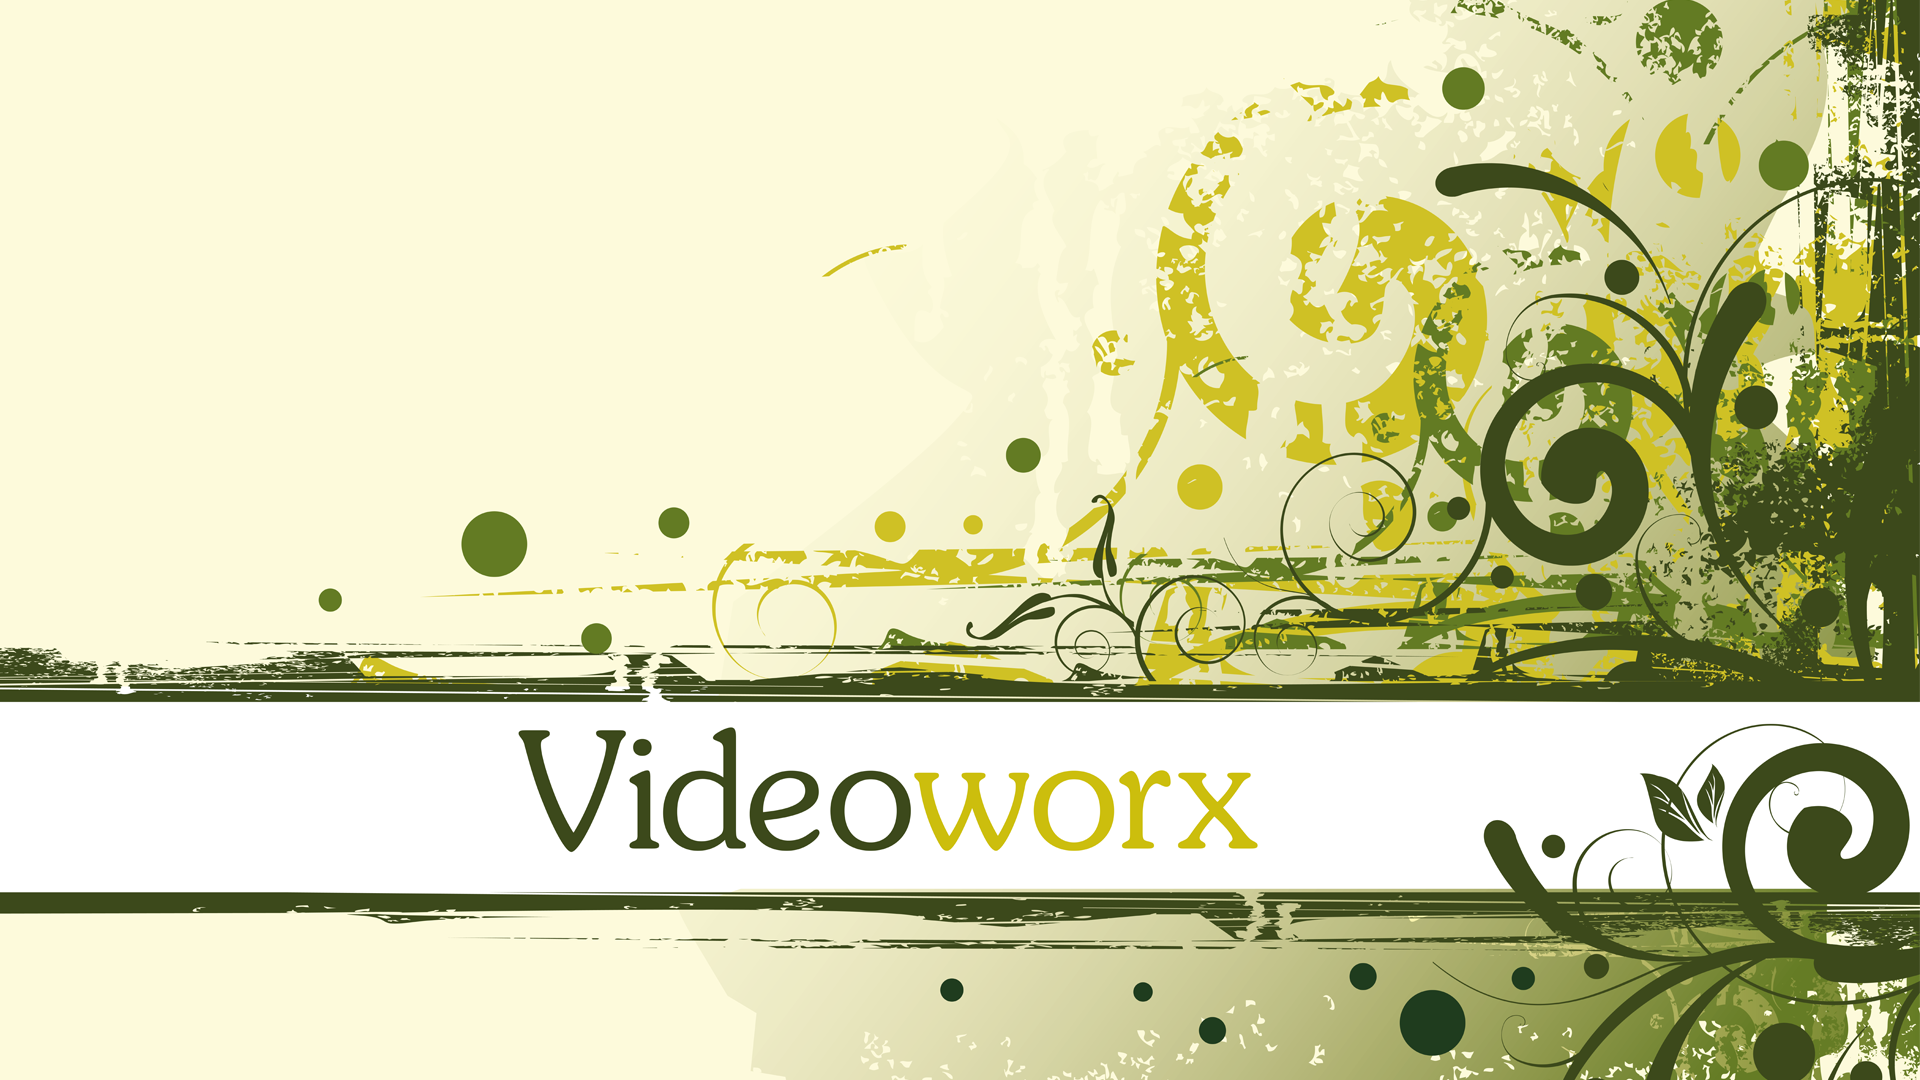  Videoworx